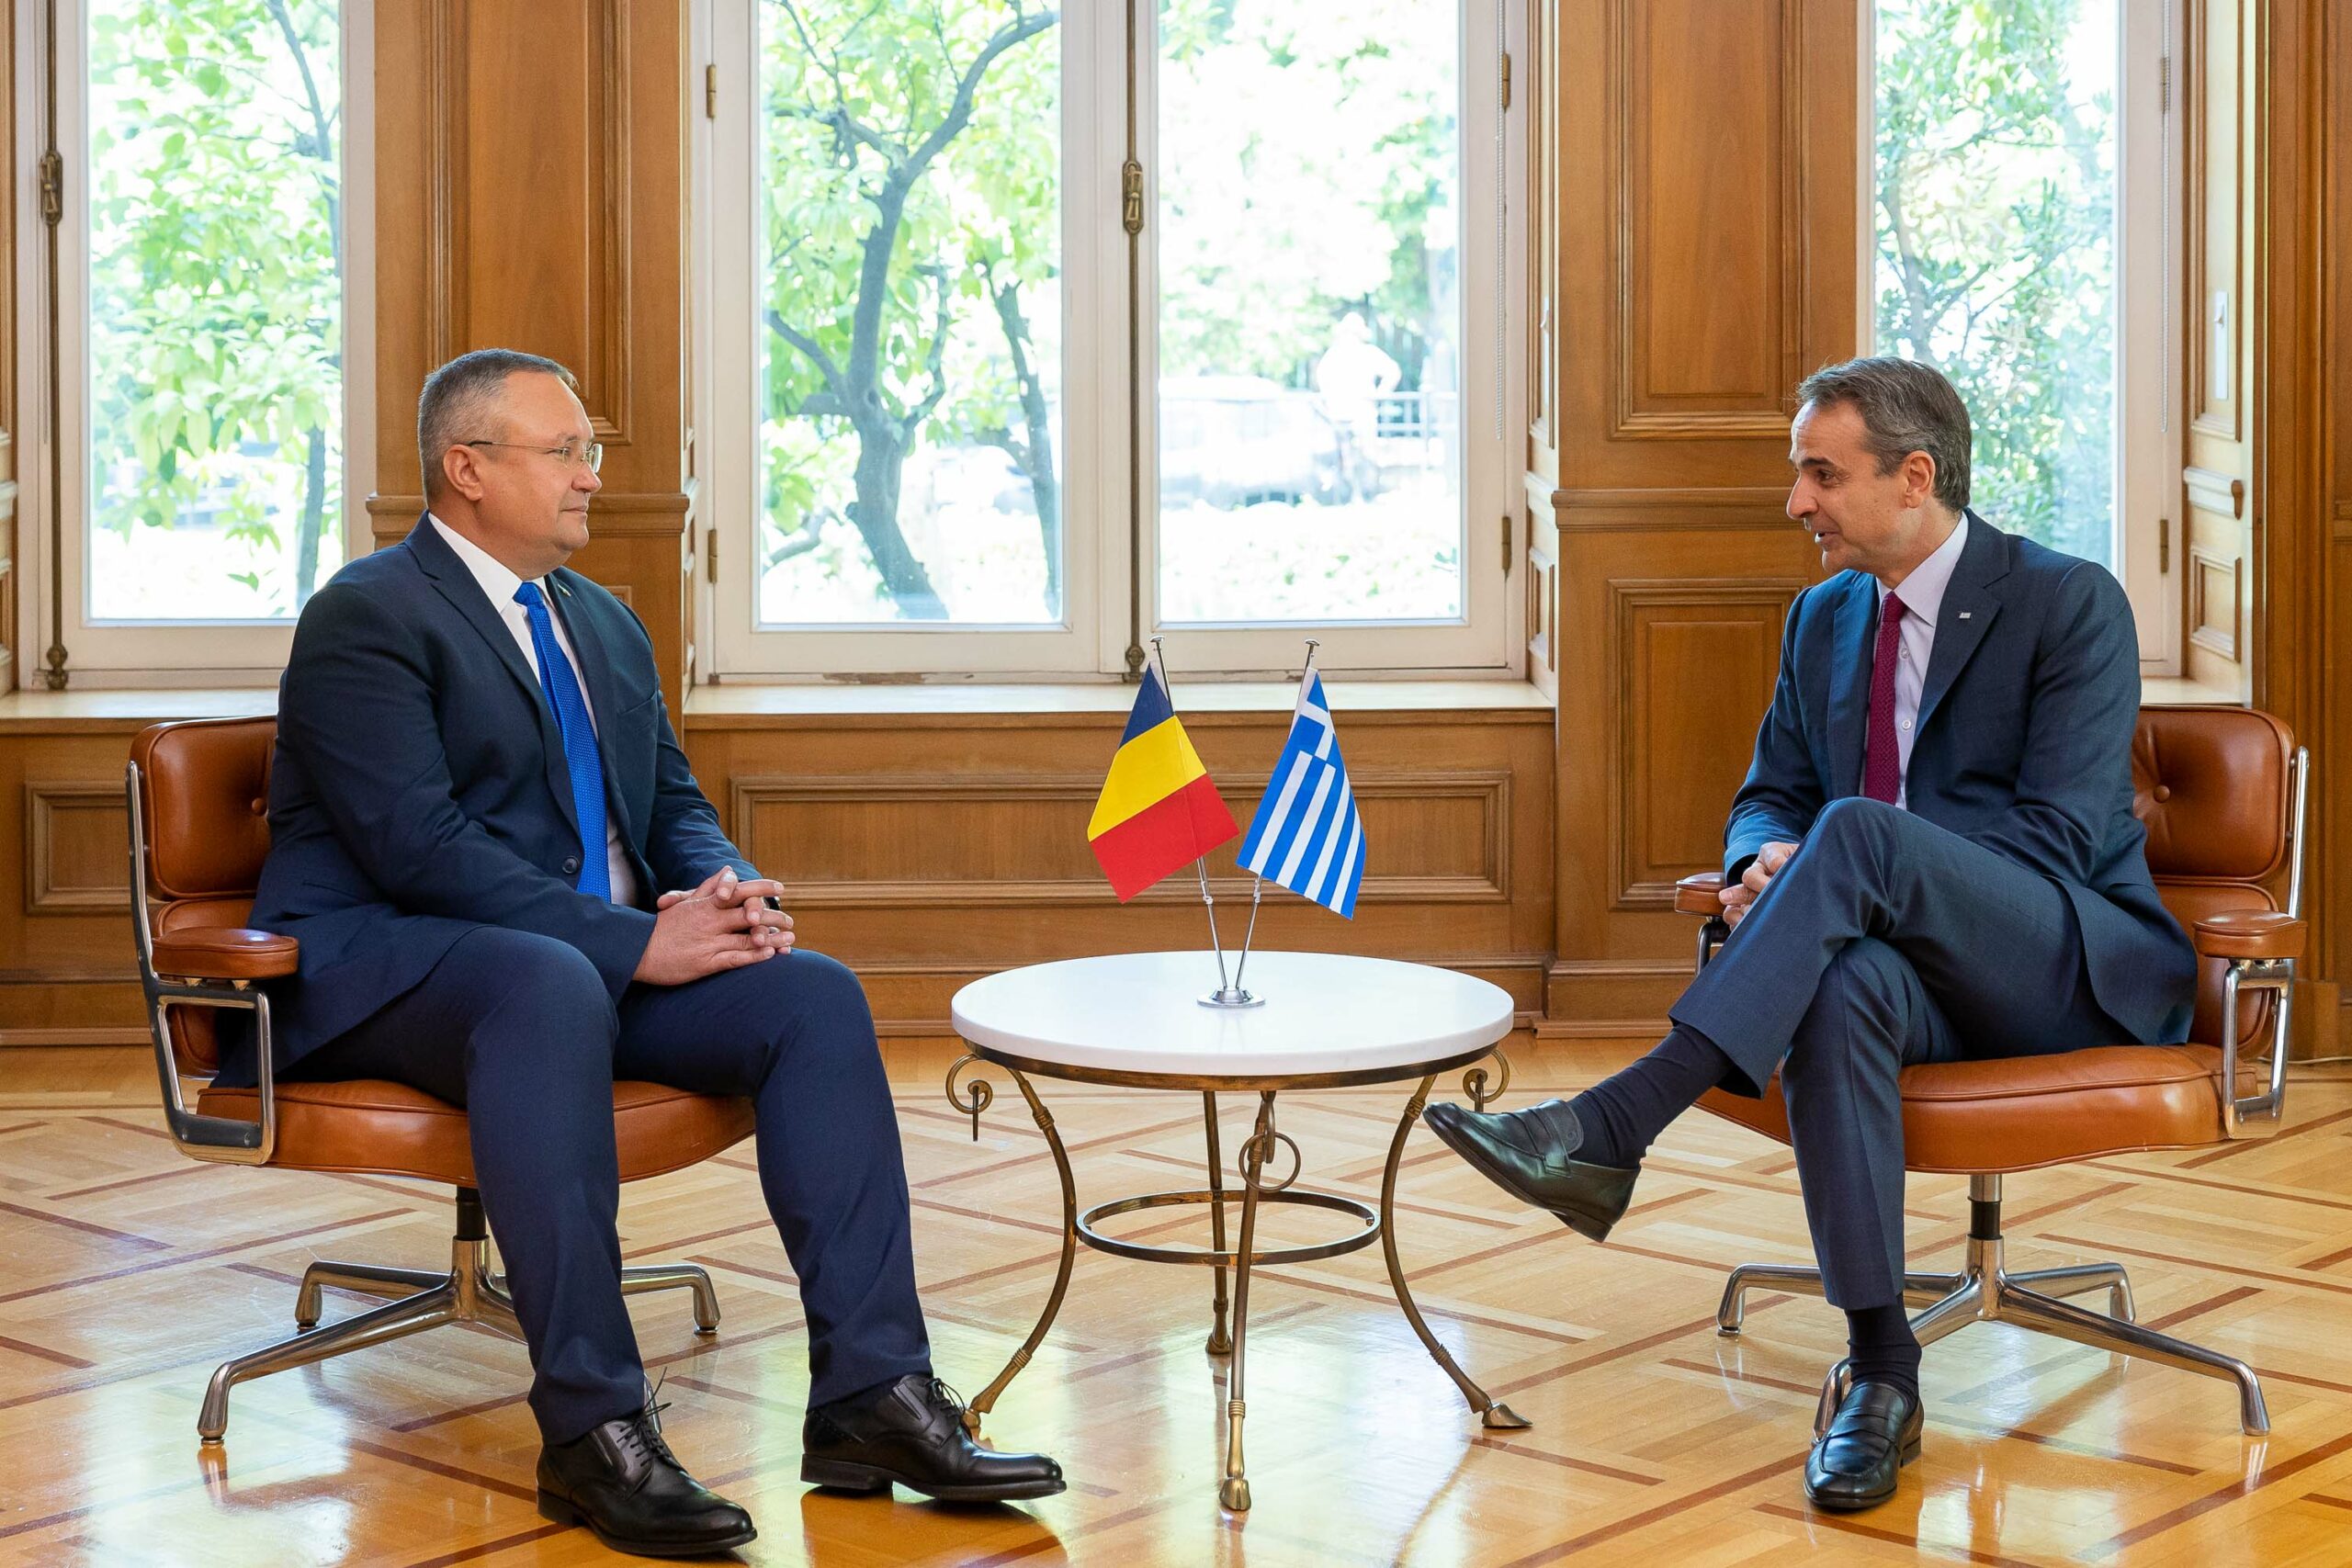 Vom importa gaze din Grecia. Premierul Nicolae Ciucă a cerut grecilor şi susţinere pentru intrarea în Schengen